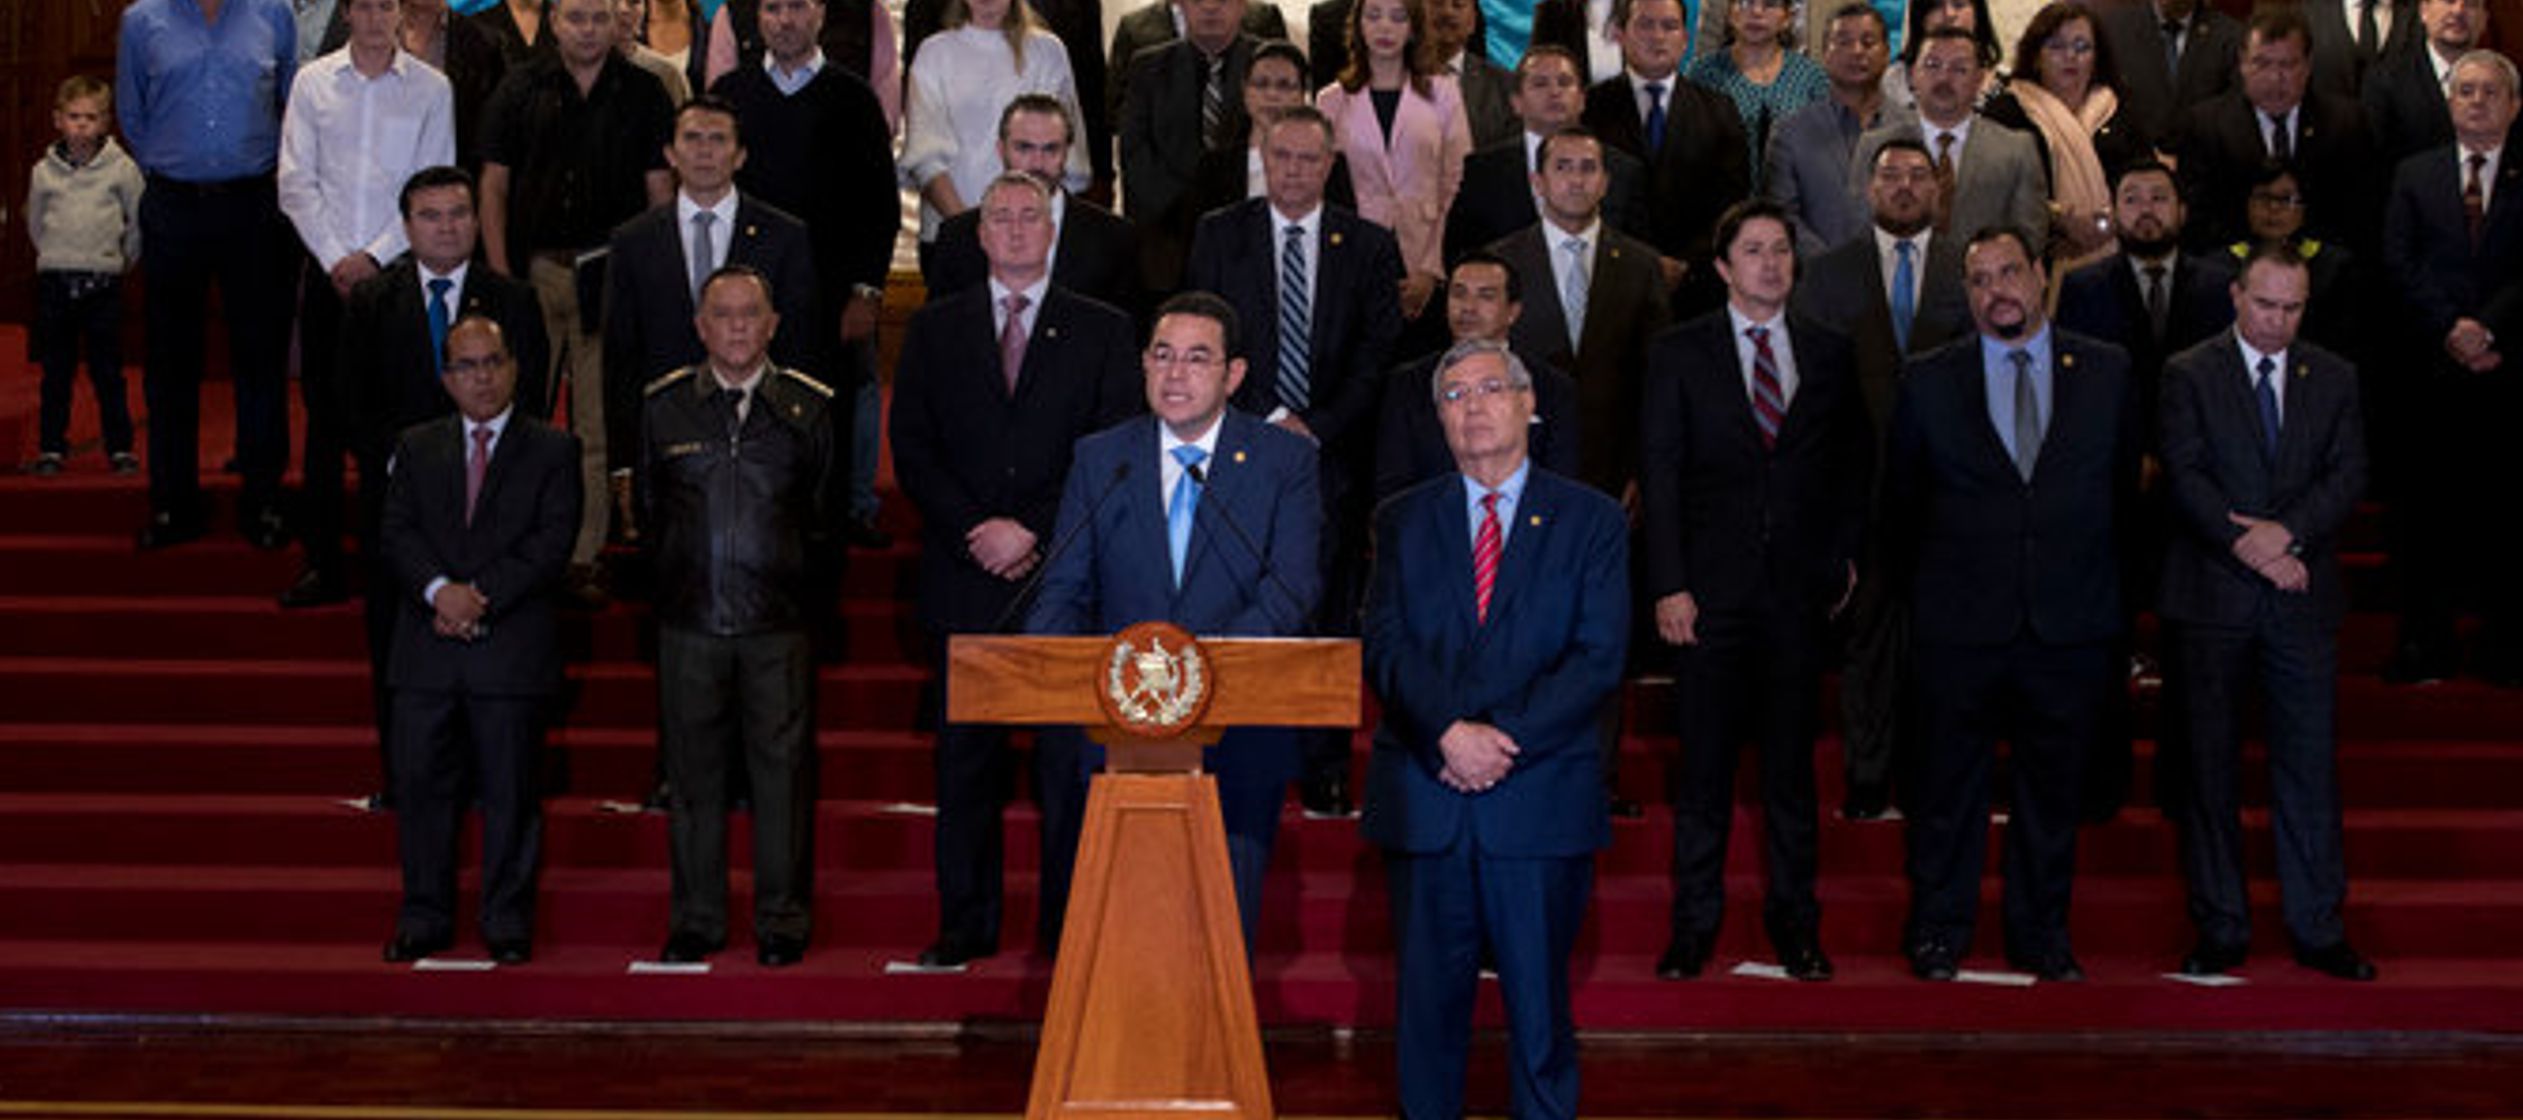 Morales ha desafiado las resoluciones de la Corte de Constitucionalidad en el pasado. De hacerlo en...